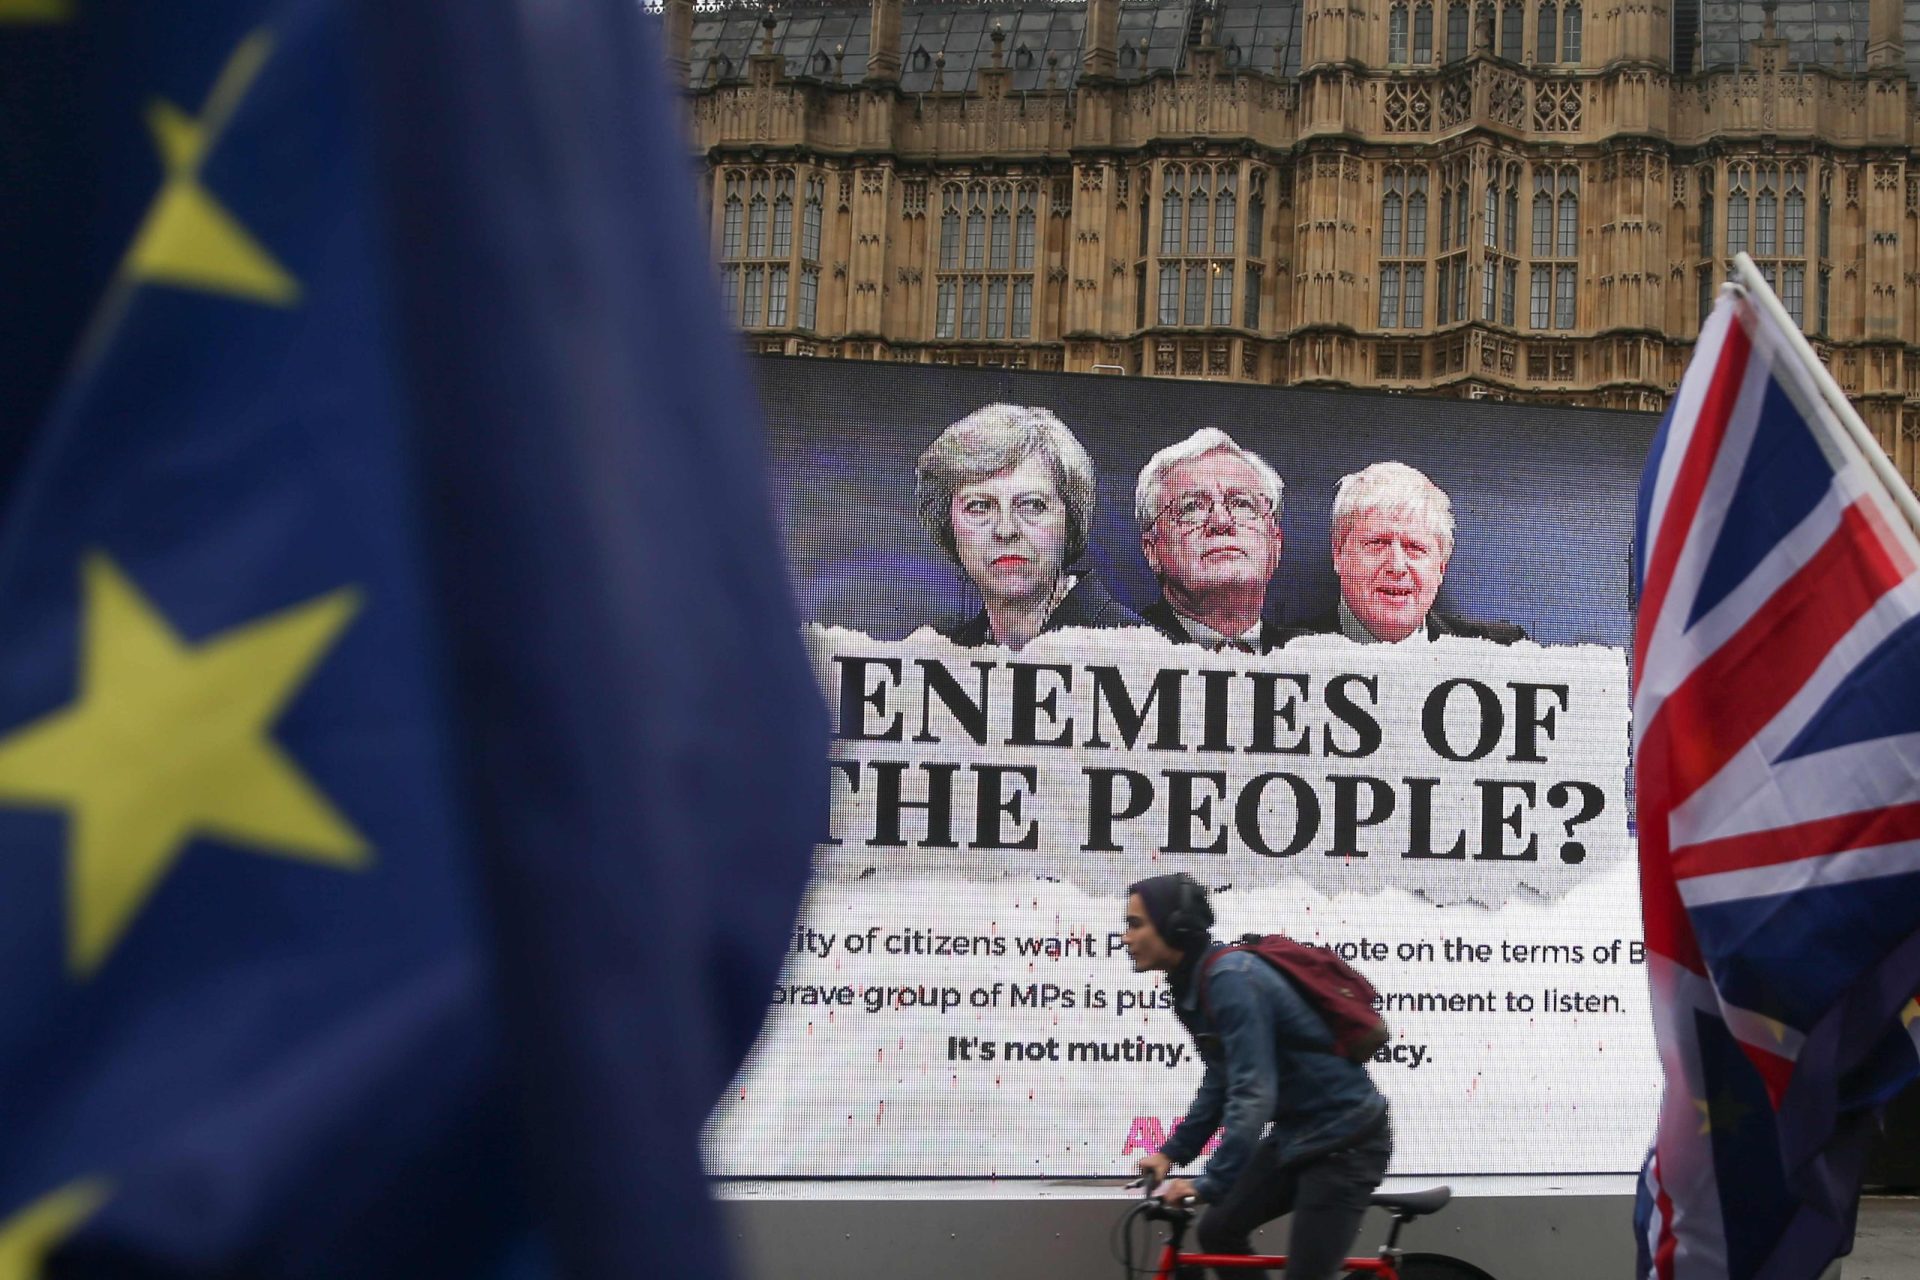 Reino Unido. Revolta conservadora contraria May e tira-lhe poderes no Brexit